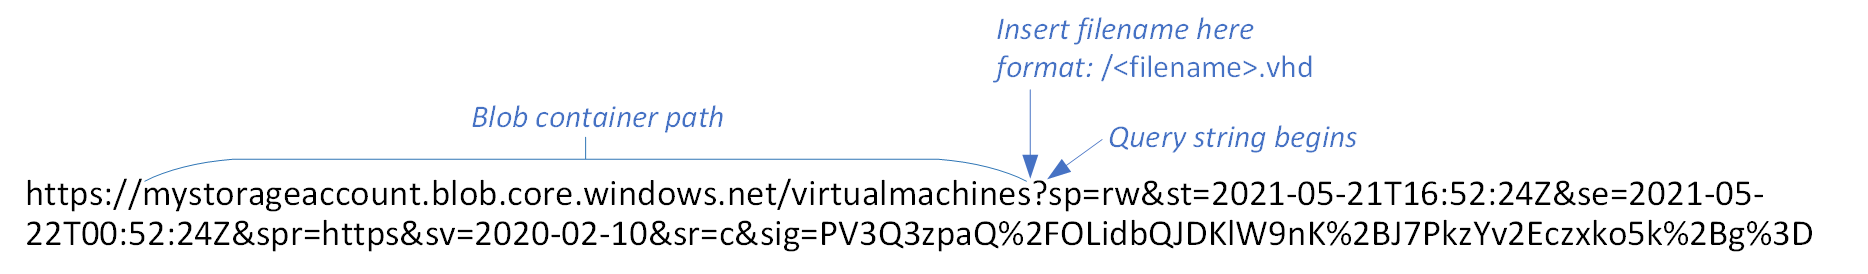 Représentation d’une URL SAS d’objet blob, avec le chemin du conteneur et l’emplacement où insérer le nouveau nom de fichier étiqueté